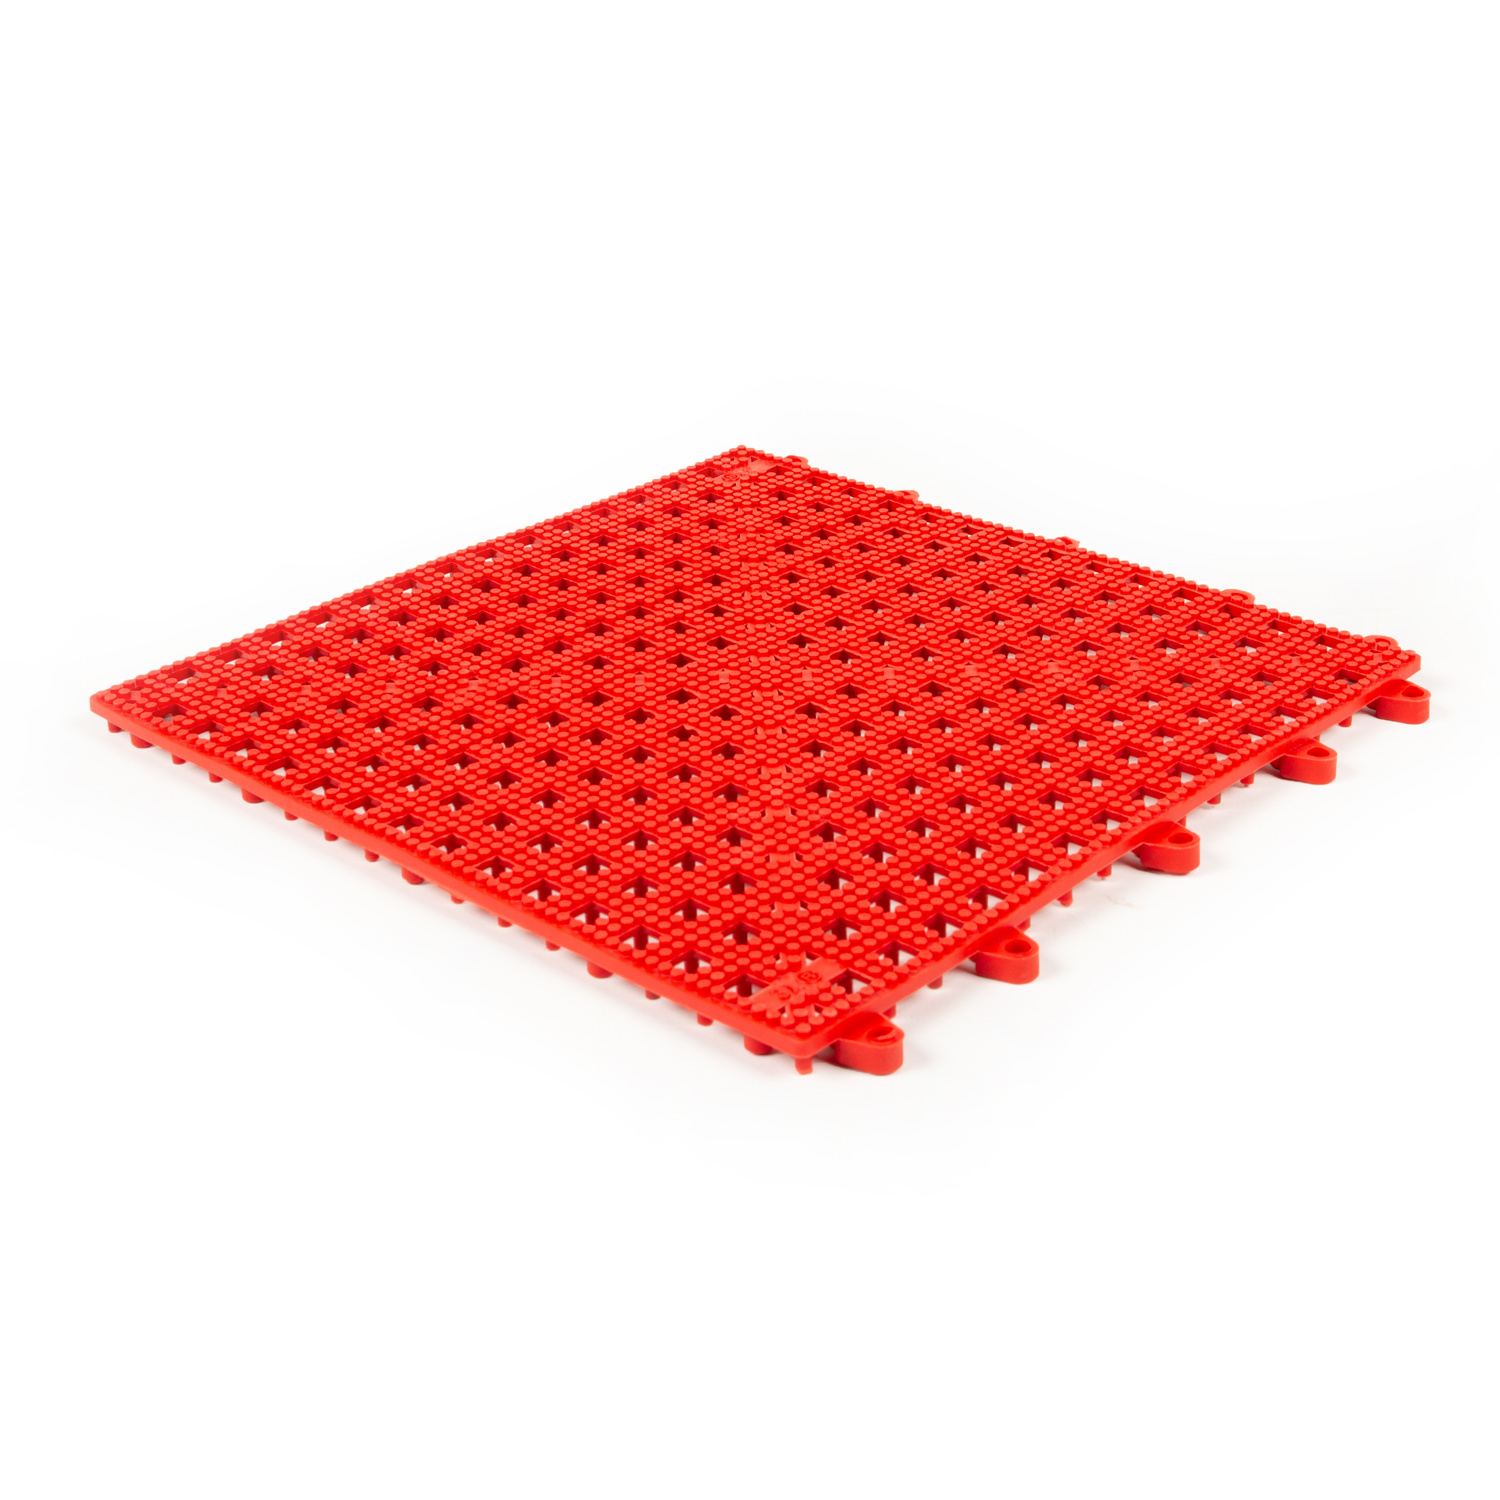 Ja vruchten Bezwaar Flexi- Soft PVC tegels | Kleur : Rood | 30x30cm - FlexTec